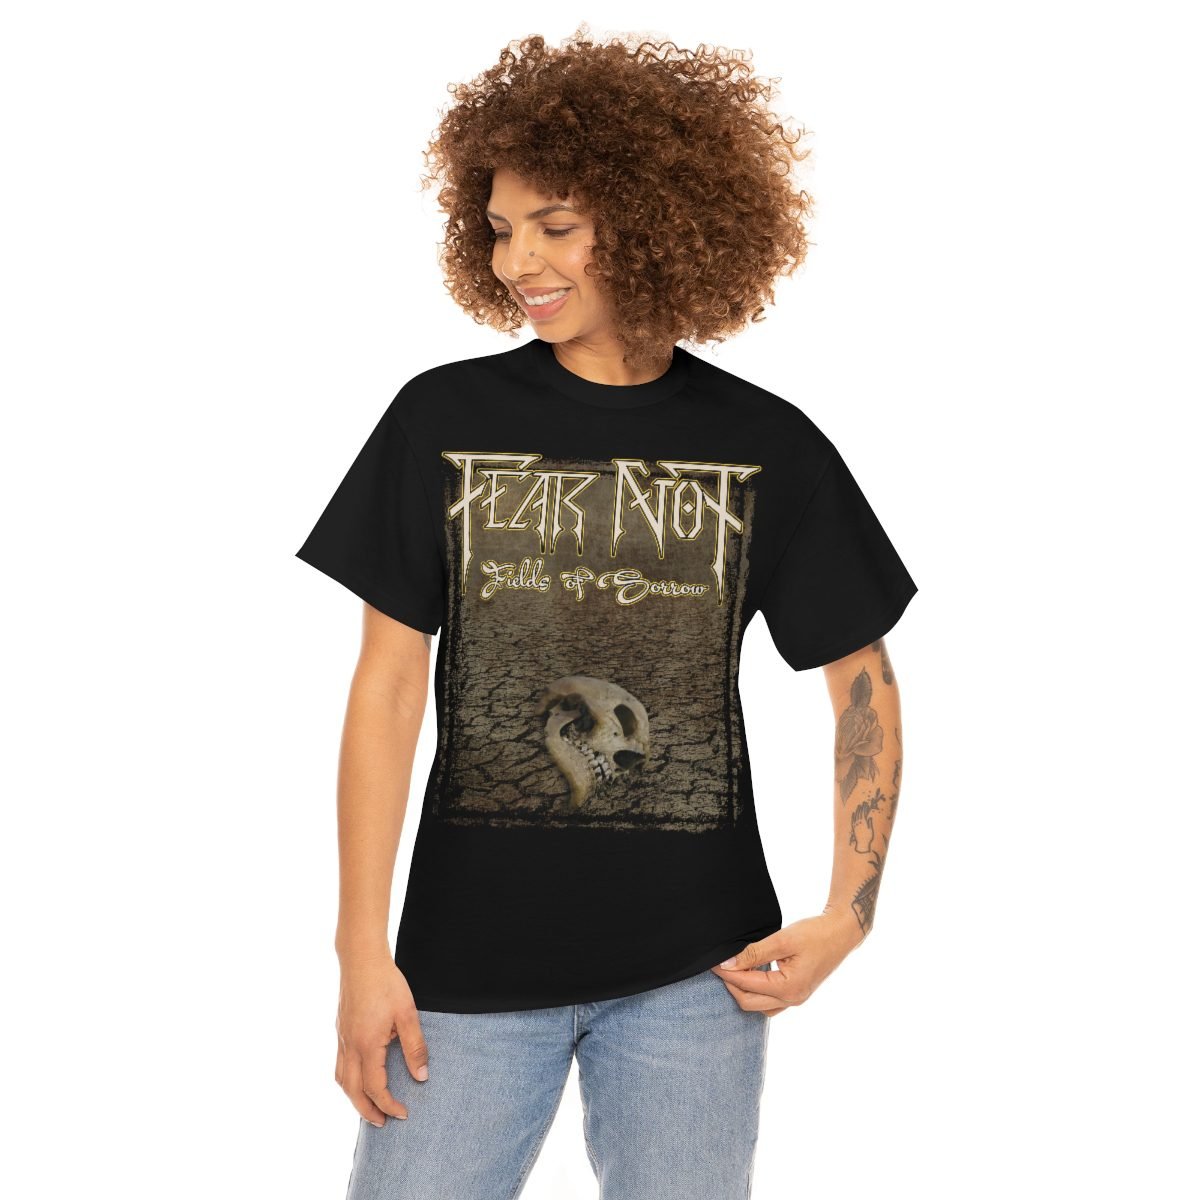 Fear Not – Fields of Sorrow Skull Short Sleeve Tshirt (5000)